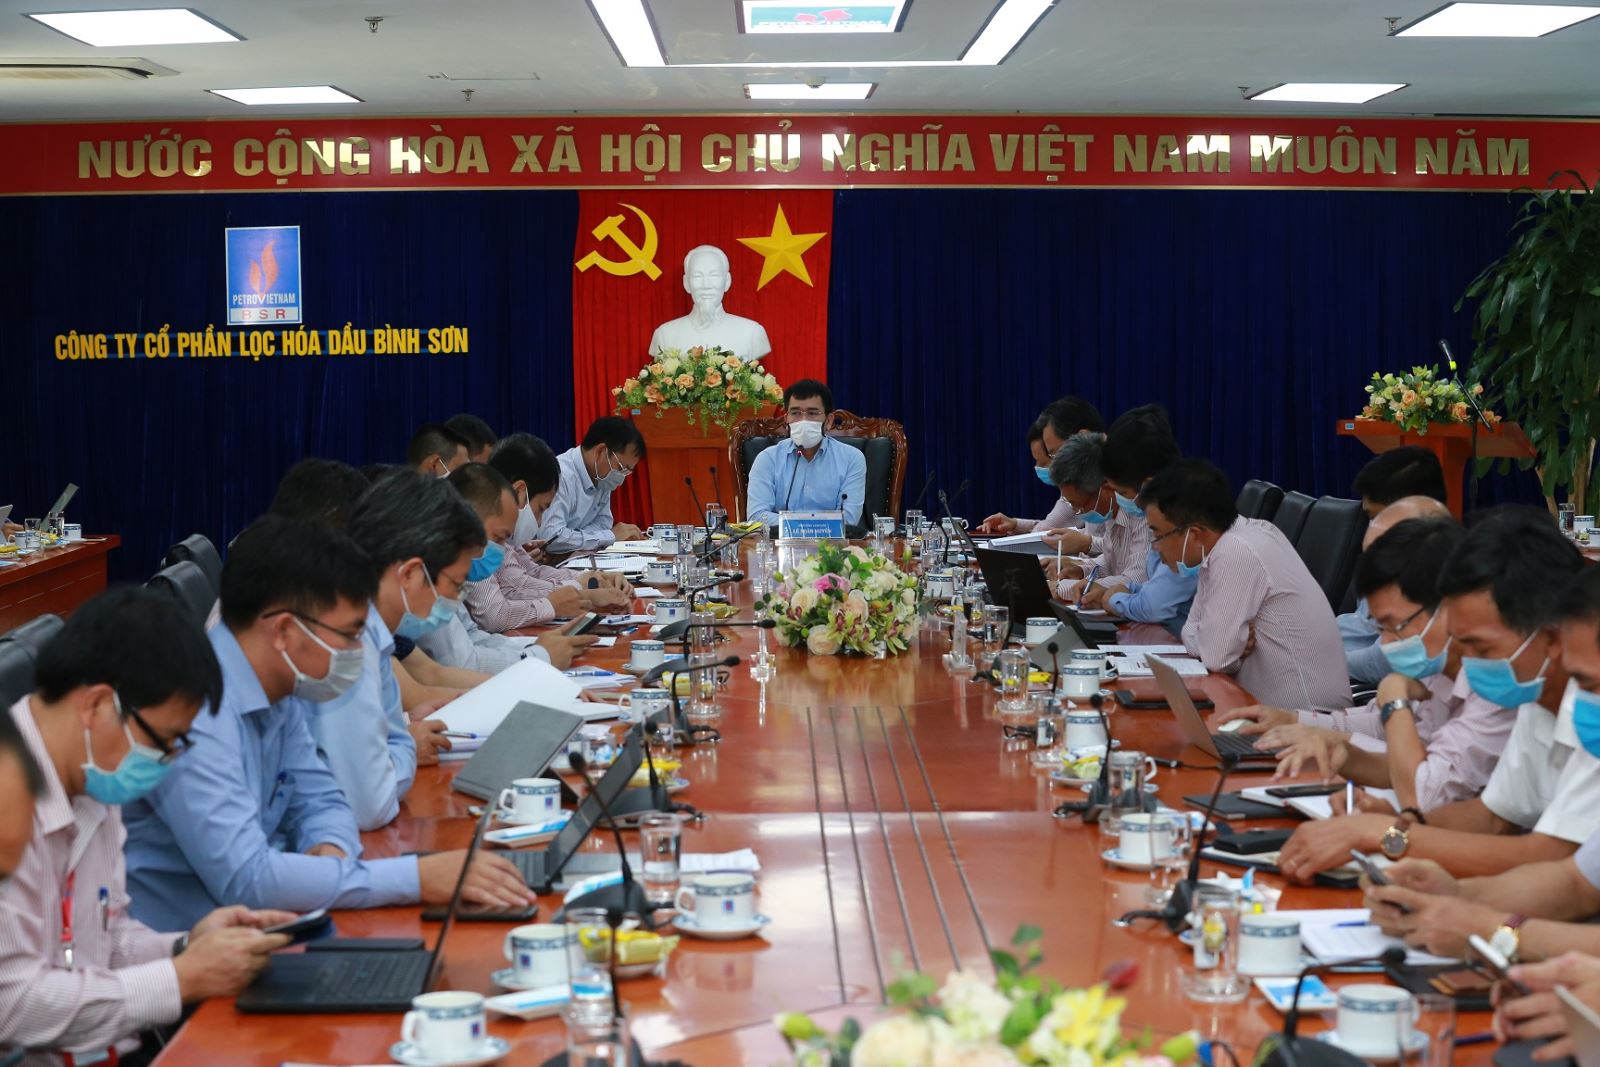 Phó tổng Giám đốc PVN Lê Xuân Huyên làm việc tại Lọc hóa dầu Bình Sơn